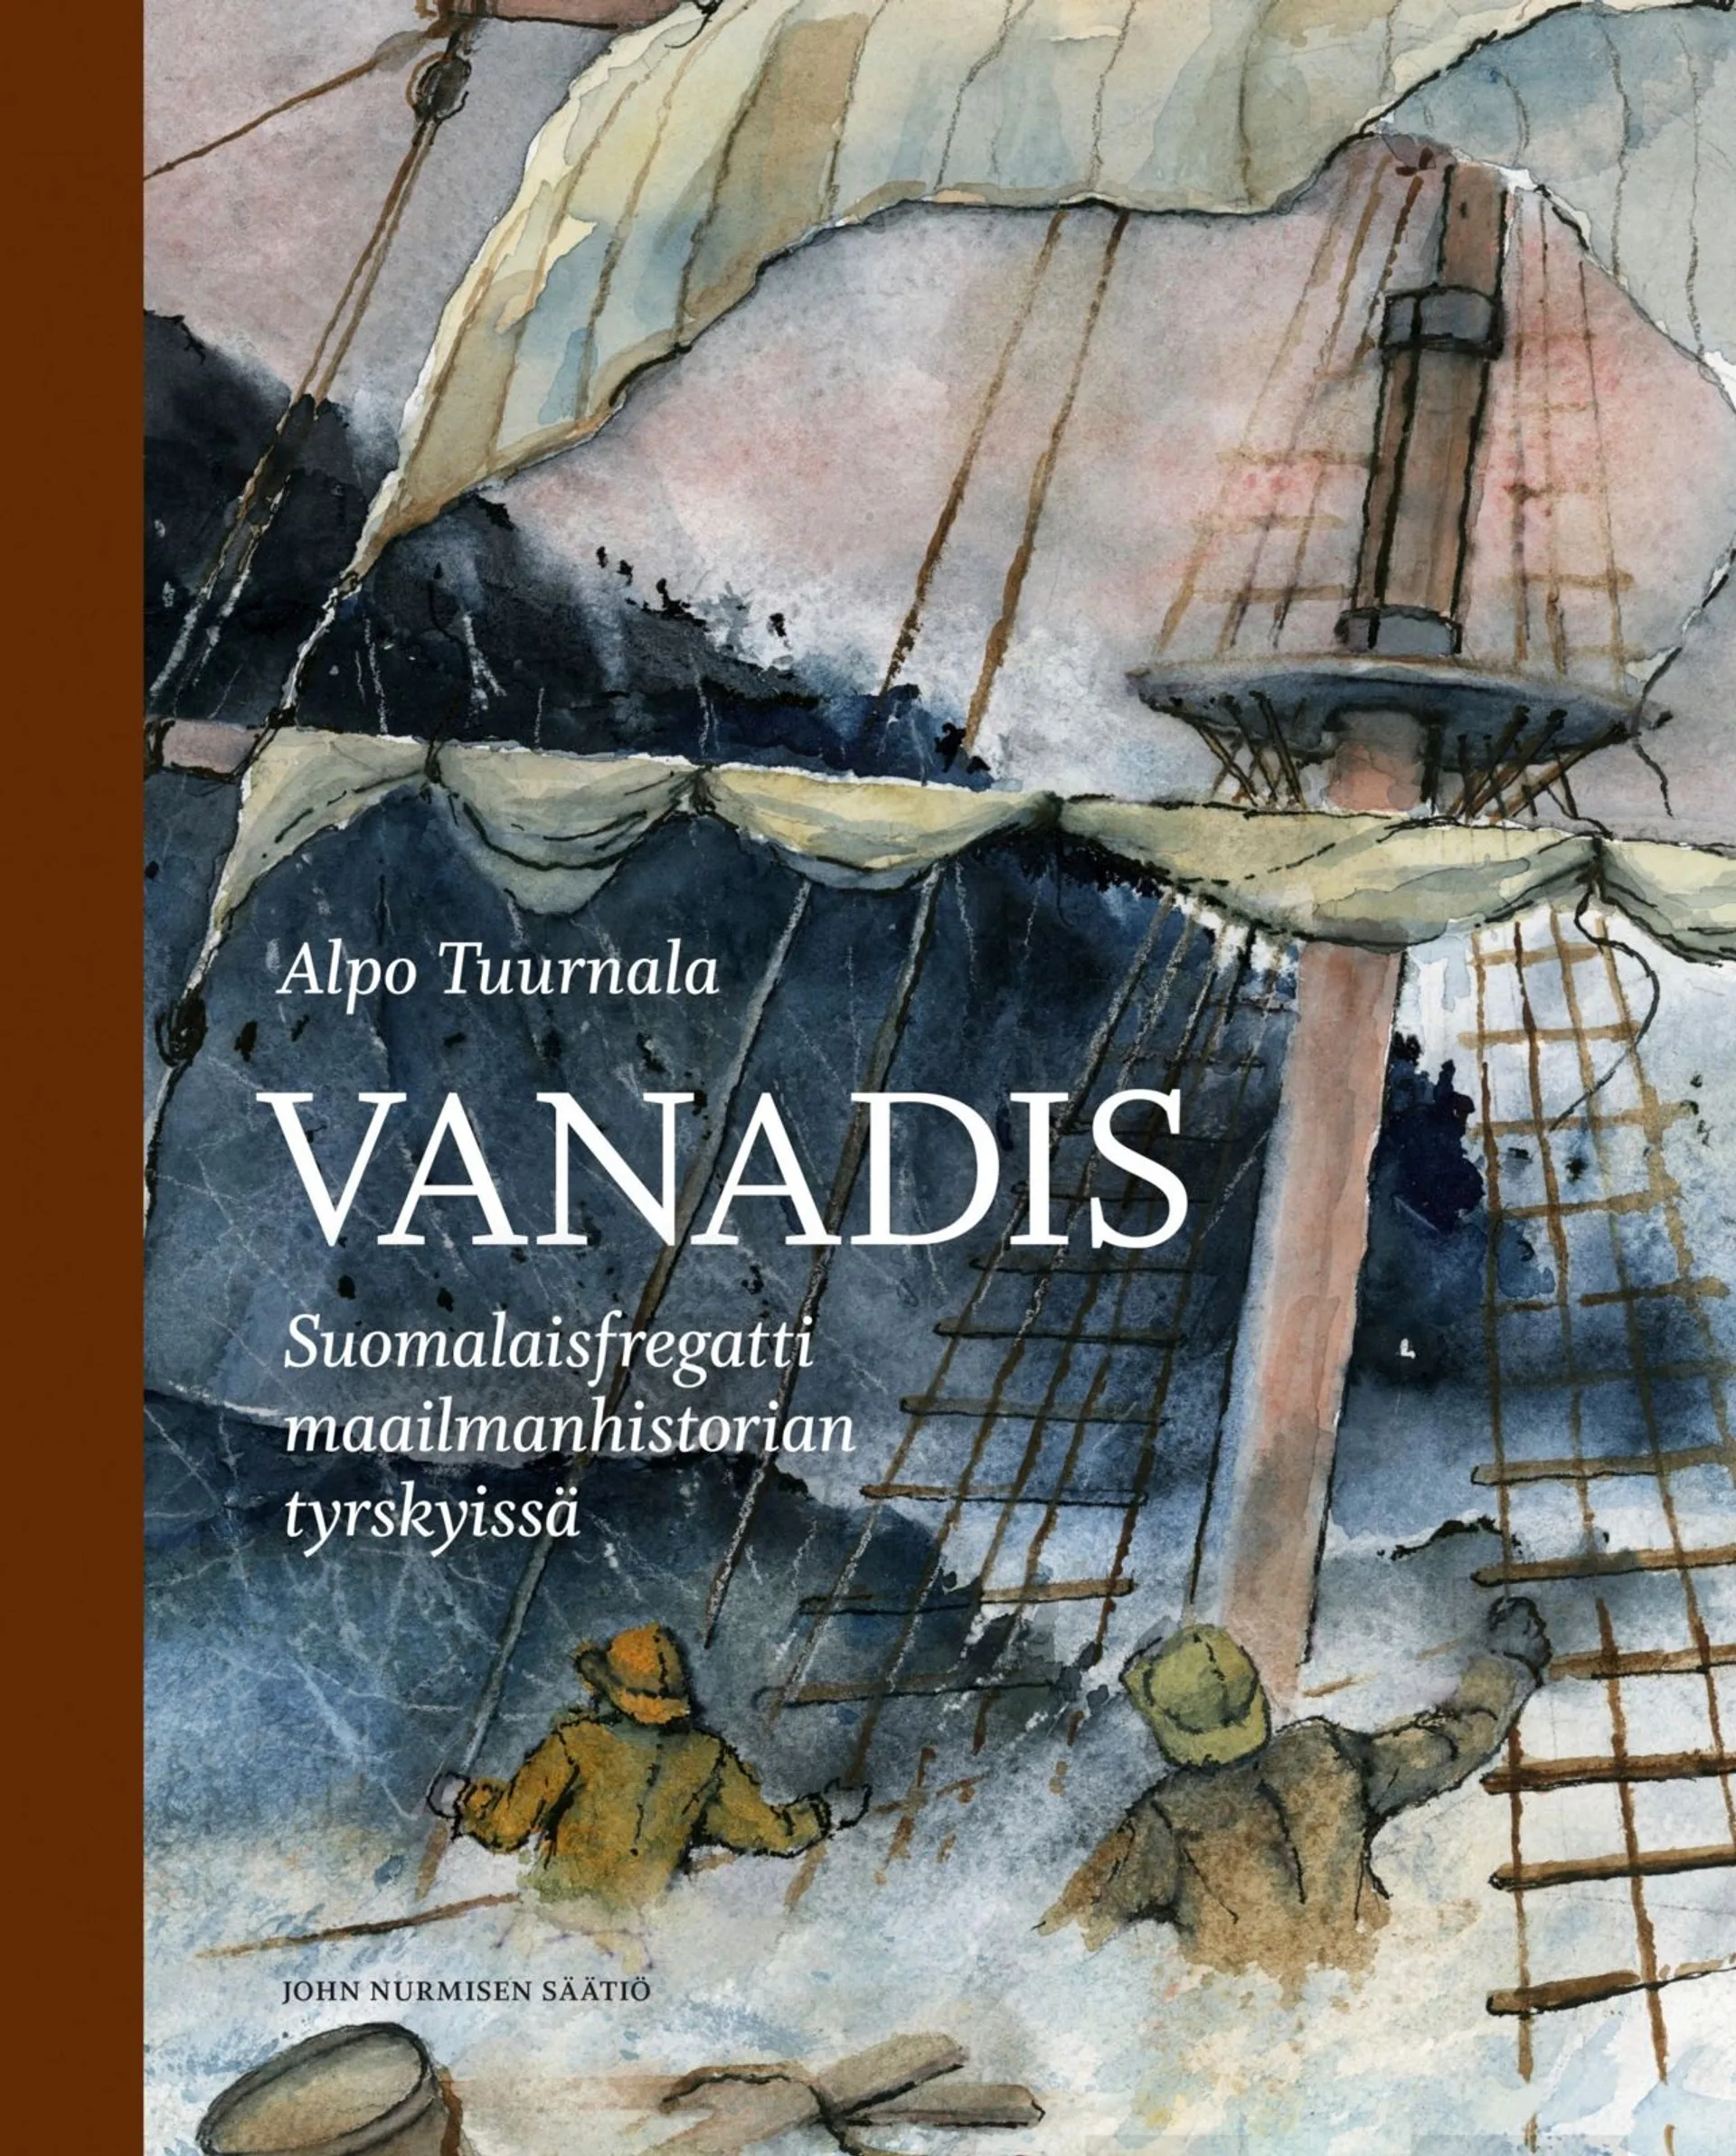 Tuurnala, Vanadis - Suomalaisfregatti maailmanhistorian tyrskyissä